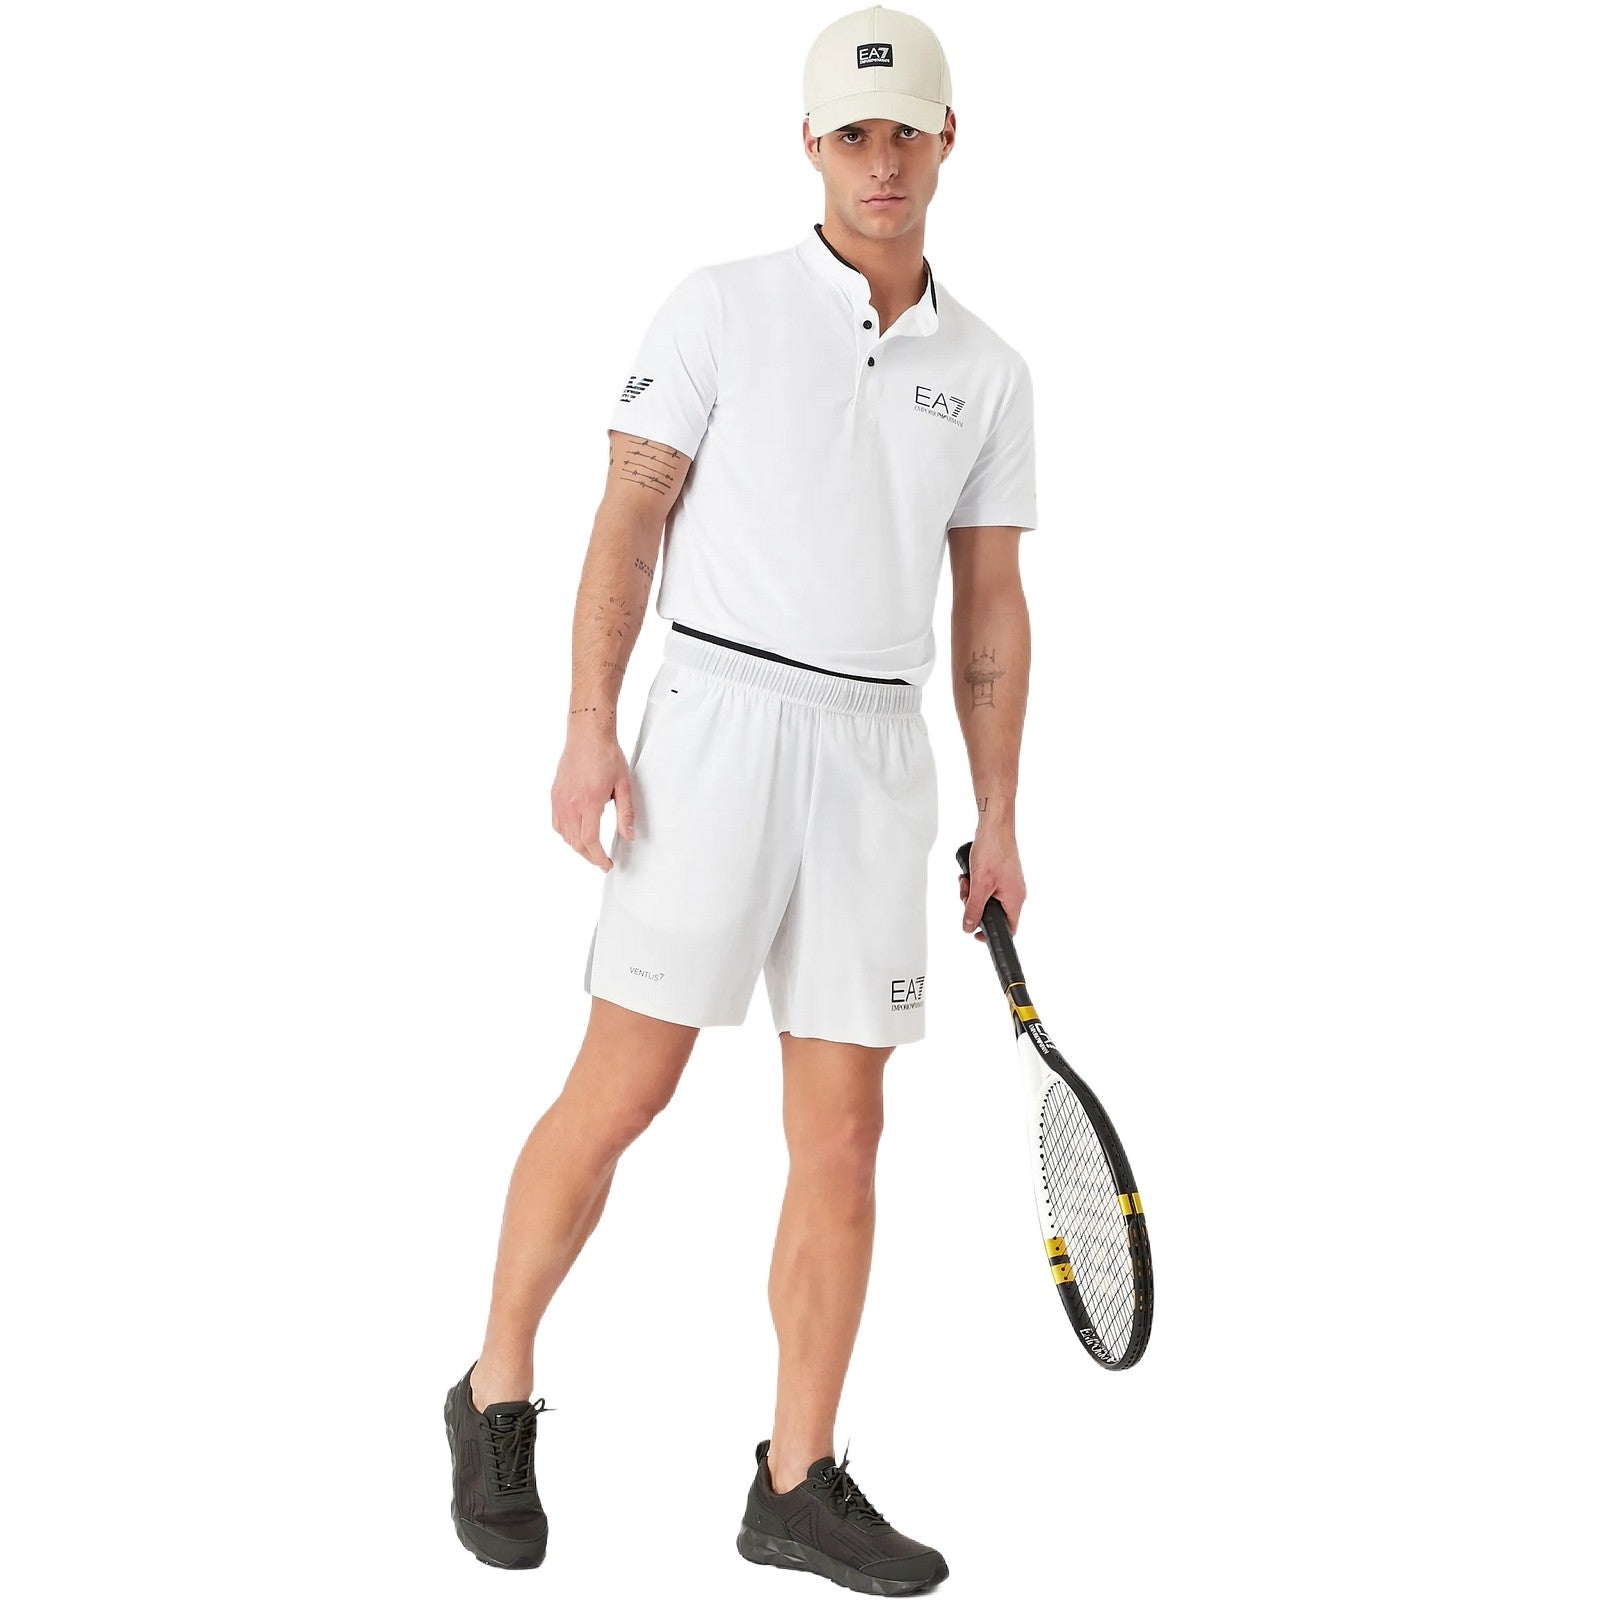 Bermuda Uomo Emporio Armani - Shorts - Bianco